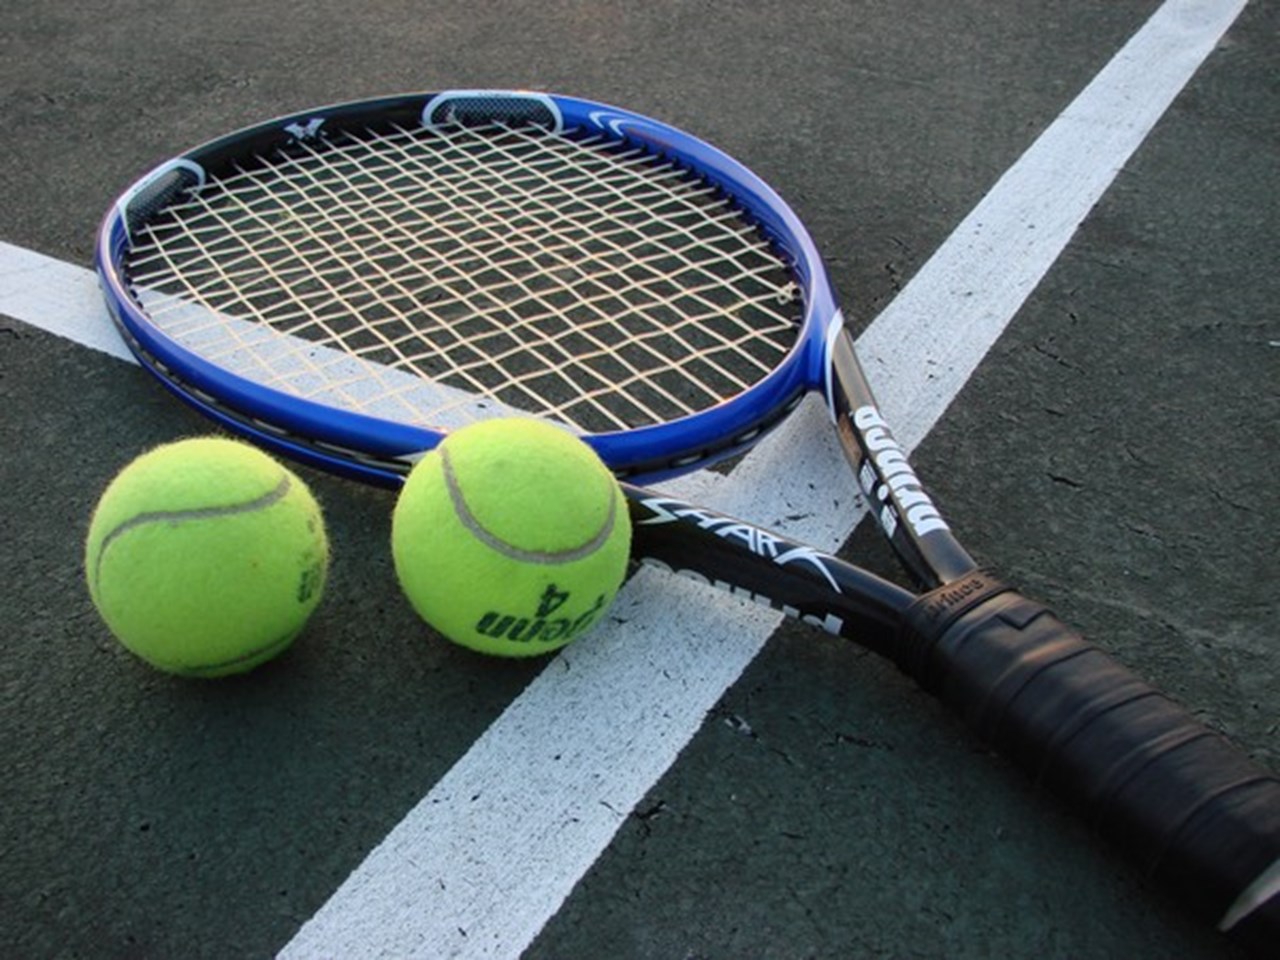 Harapkan lebih banyak turnamen tenis di Bhubaneswar, kata bintang baru